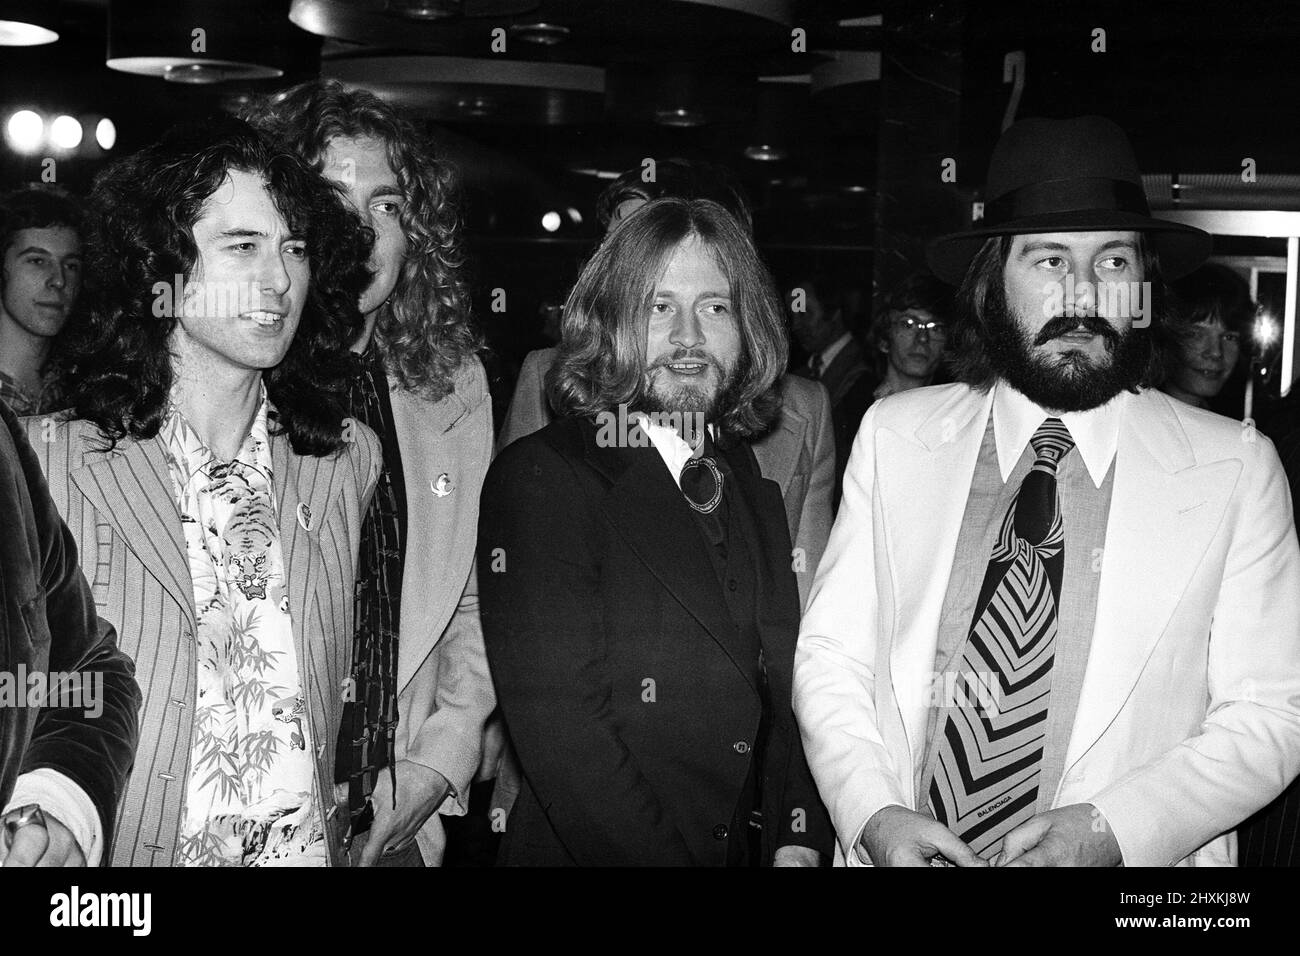 La rock band LED Zeppelin al Premier britannico del film da concerto "The Song remains the same". Da sinistra a destra, Jimmy Page, Robert Plant, John Paul Jones e John Bonham. 4th novembre 1976. Foto Stock